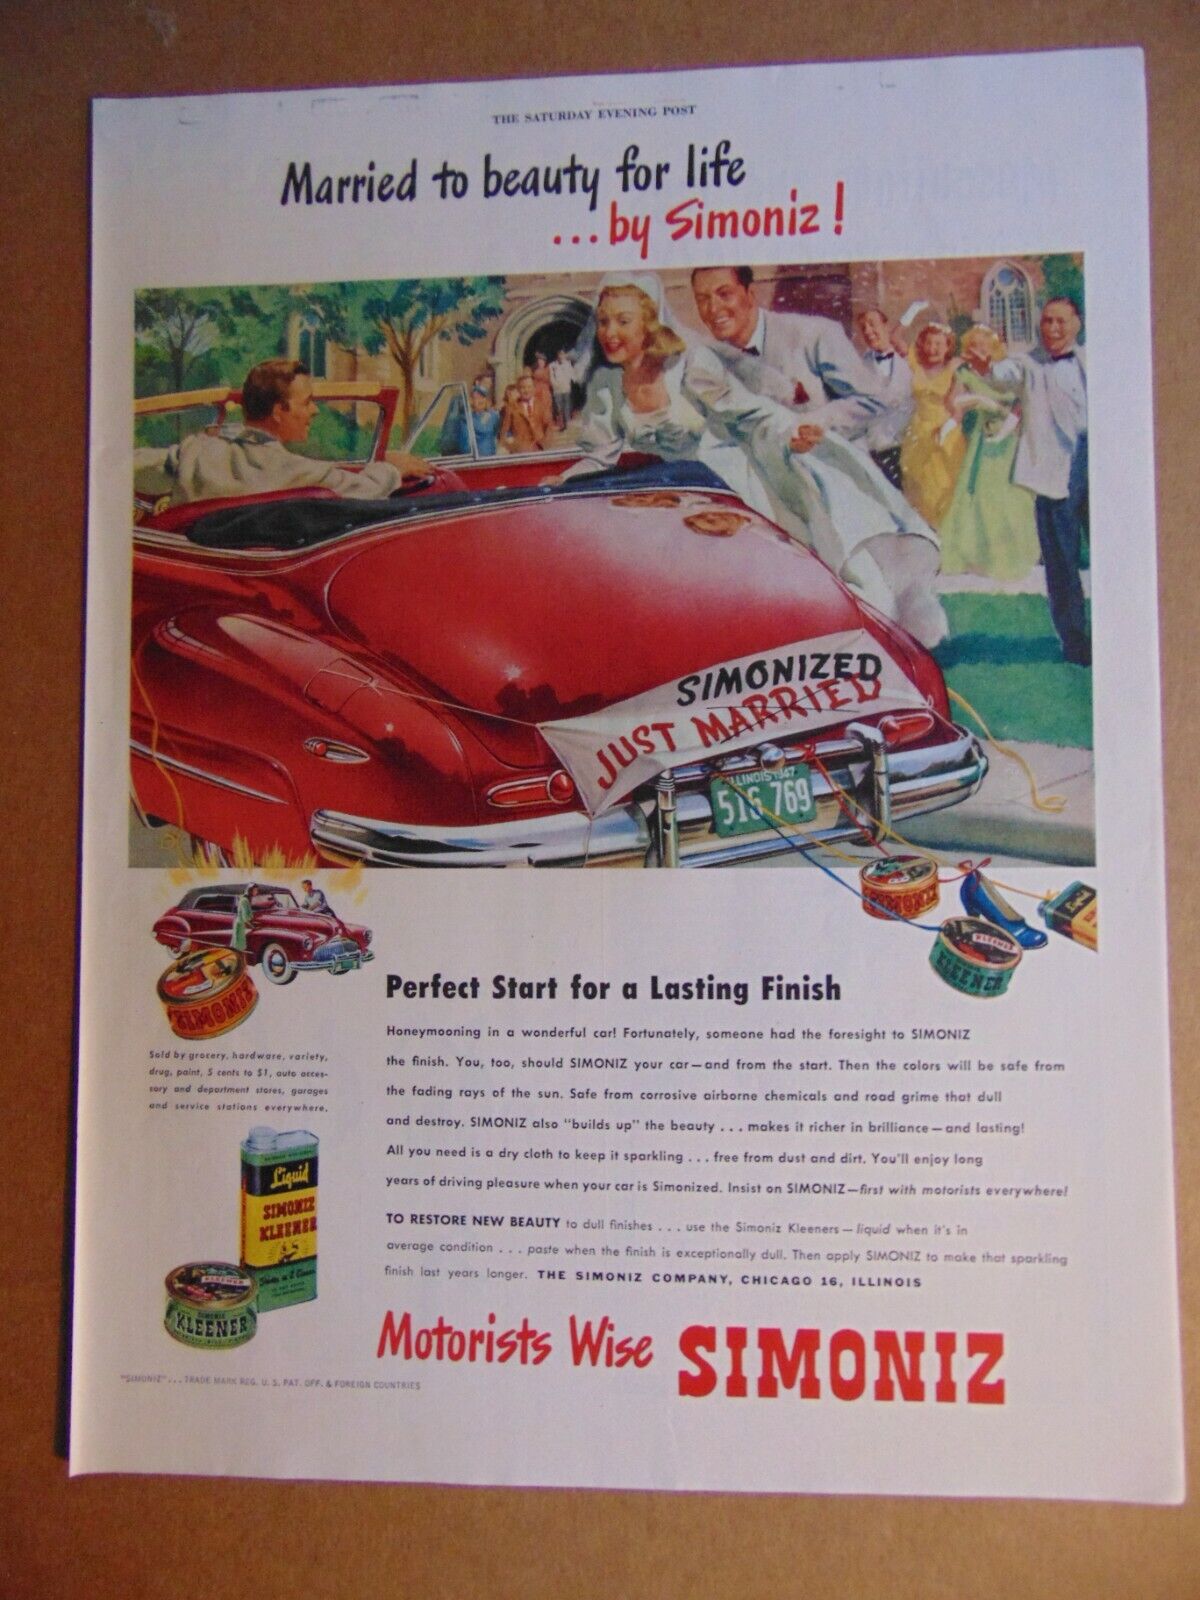 Marilyn Monroe-inspired Simoniz ad from 1953. Illustrated by John C Howard.